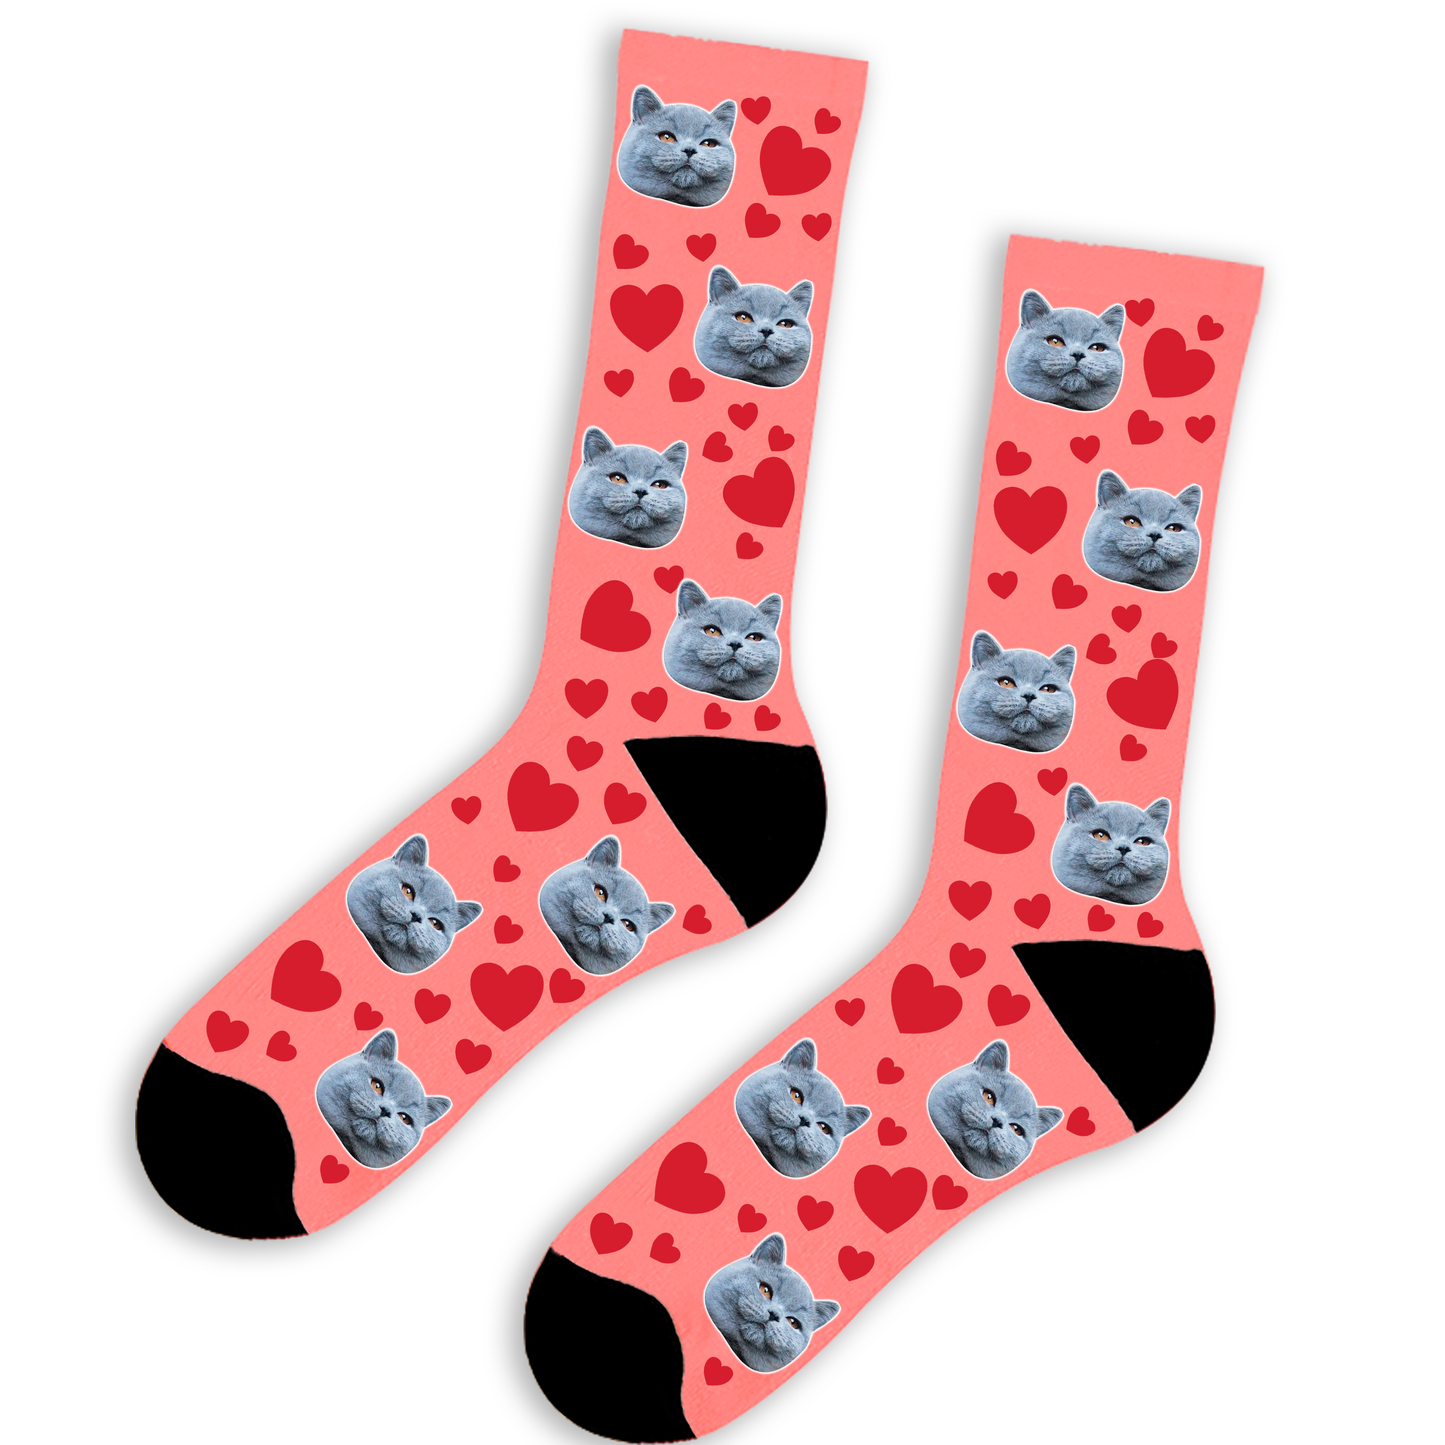 Cat & Hearts Socks